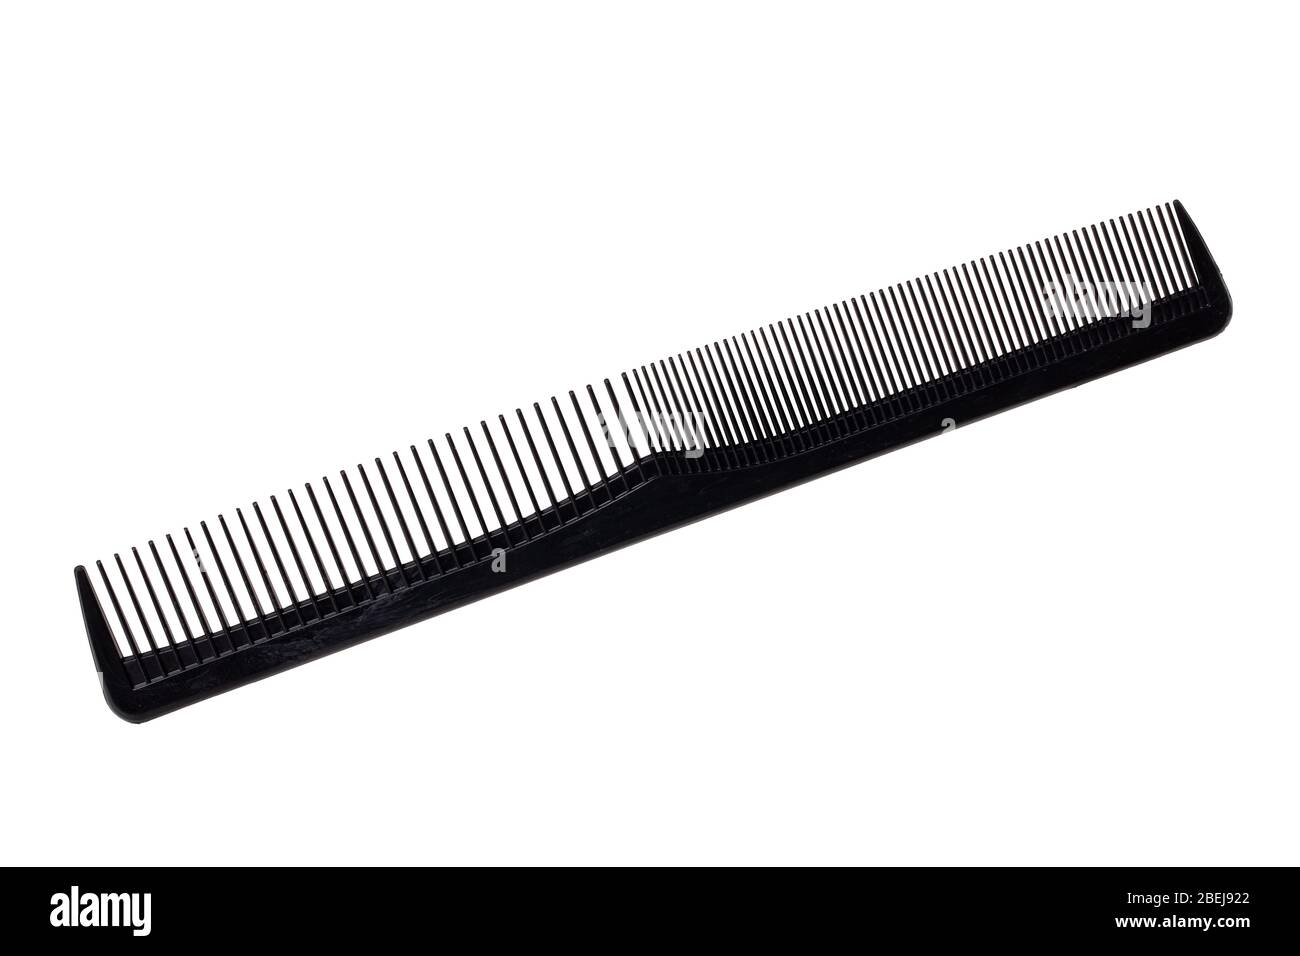 Herramientas de peluquería aisladas. Primer plano de un peine-guía negro aislado sobre un fondo blanco. Equipamiento de peluquería. Fotografía macro. Foto de stock